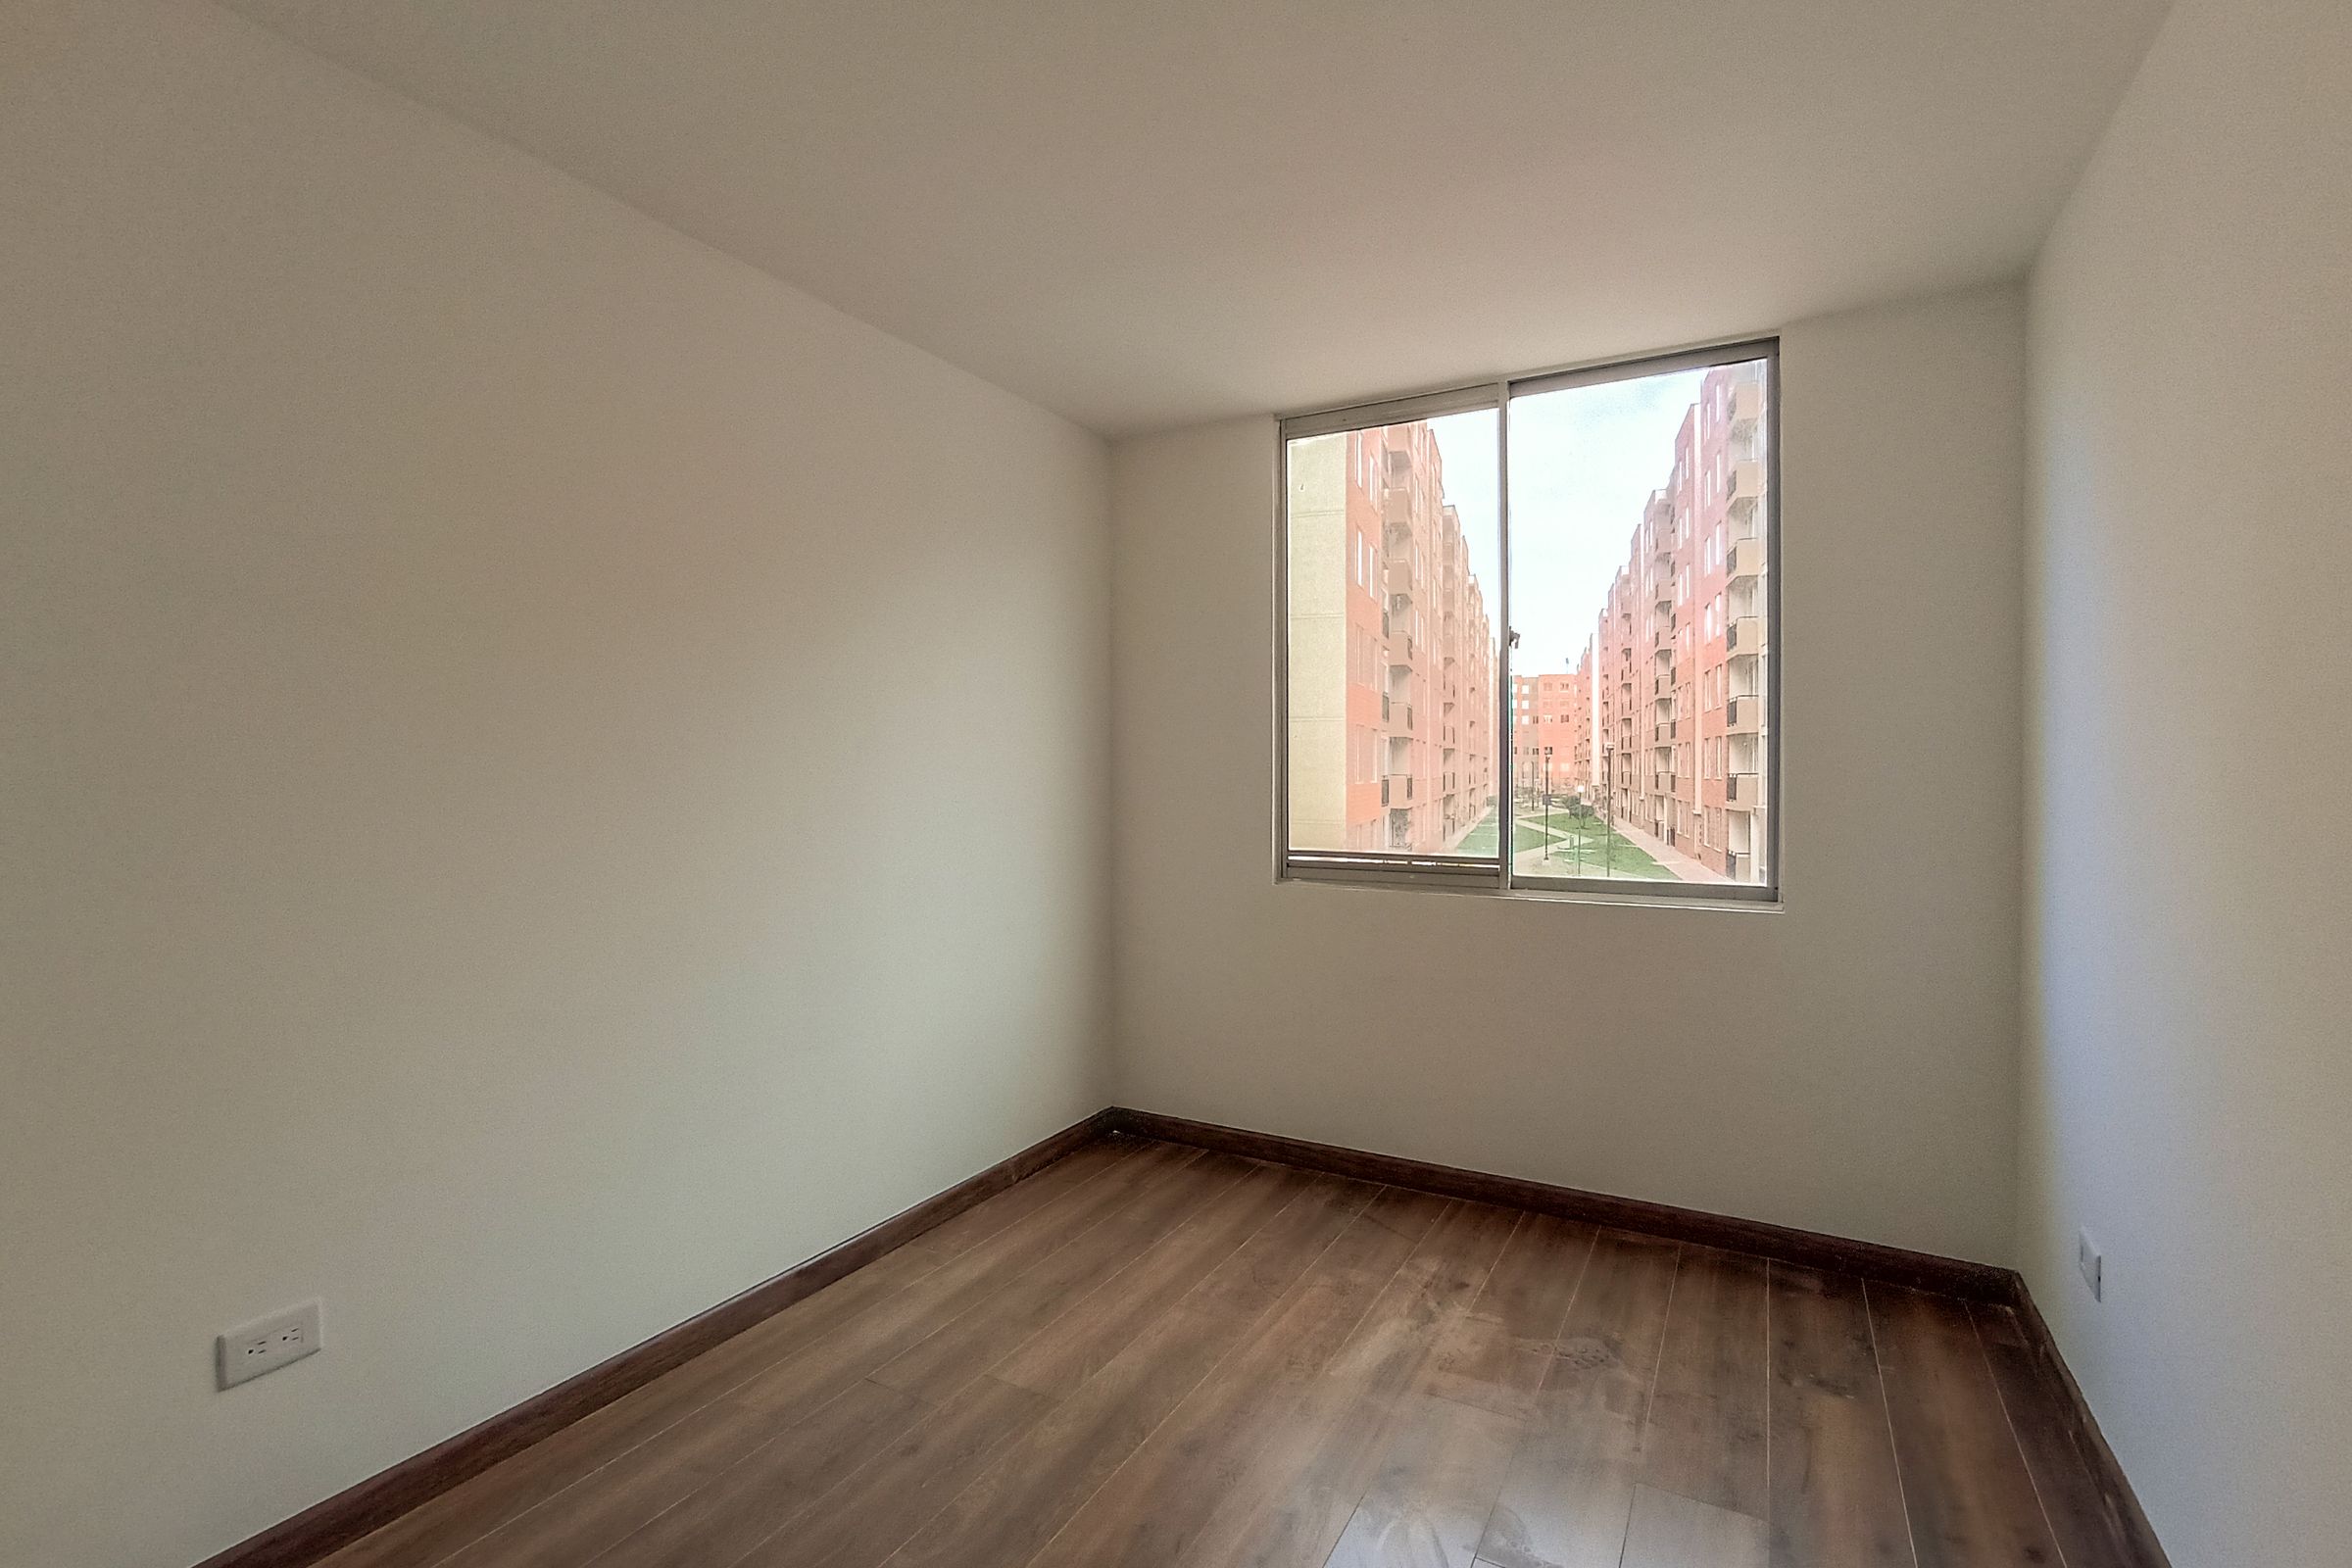 Apartamento en arriendo Madrid 64 m² - $ 725.000,00